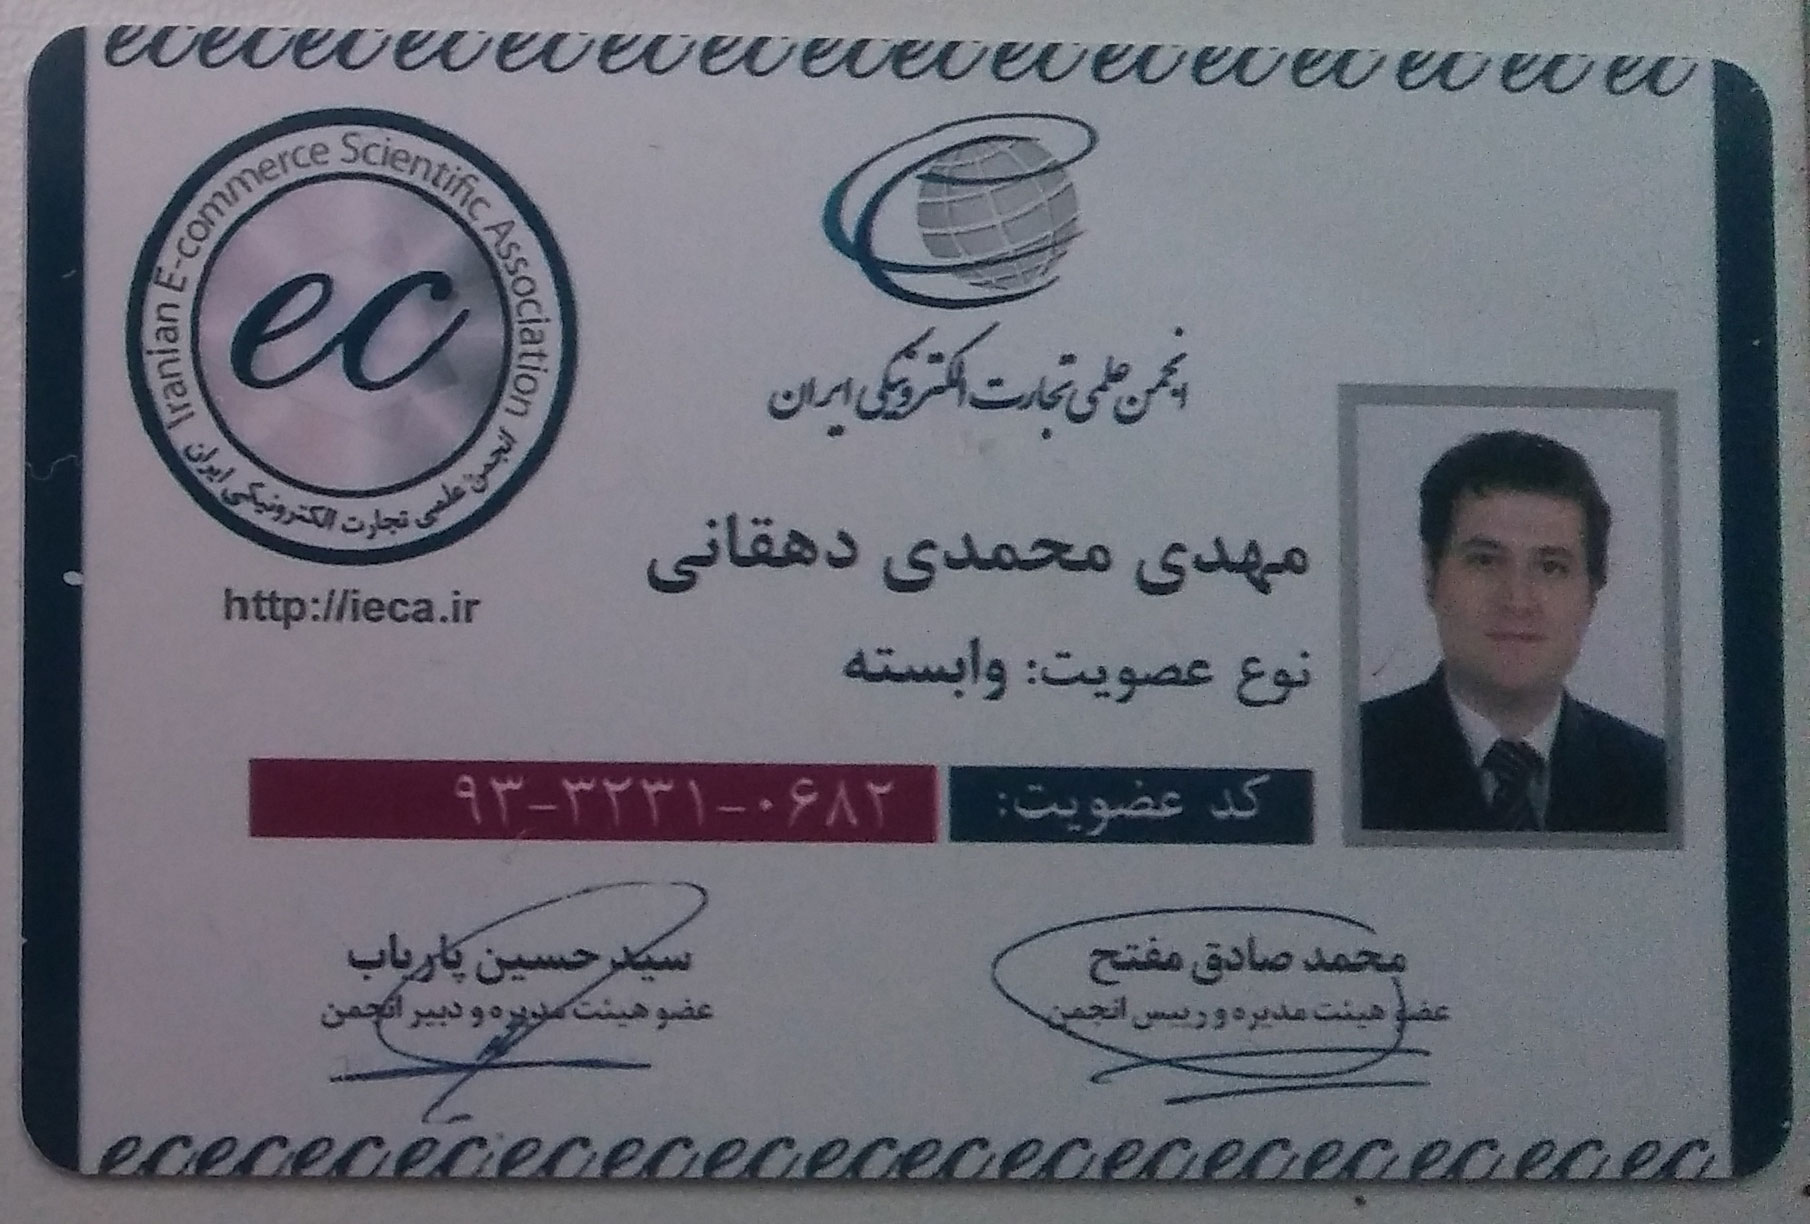 - عضو انجمن علمی تجارت الکترونیکی ایران